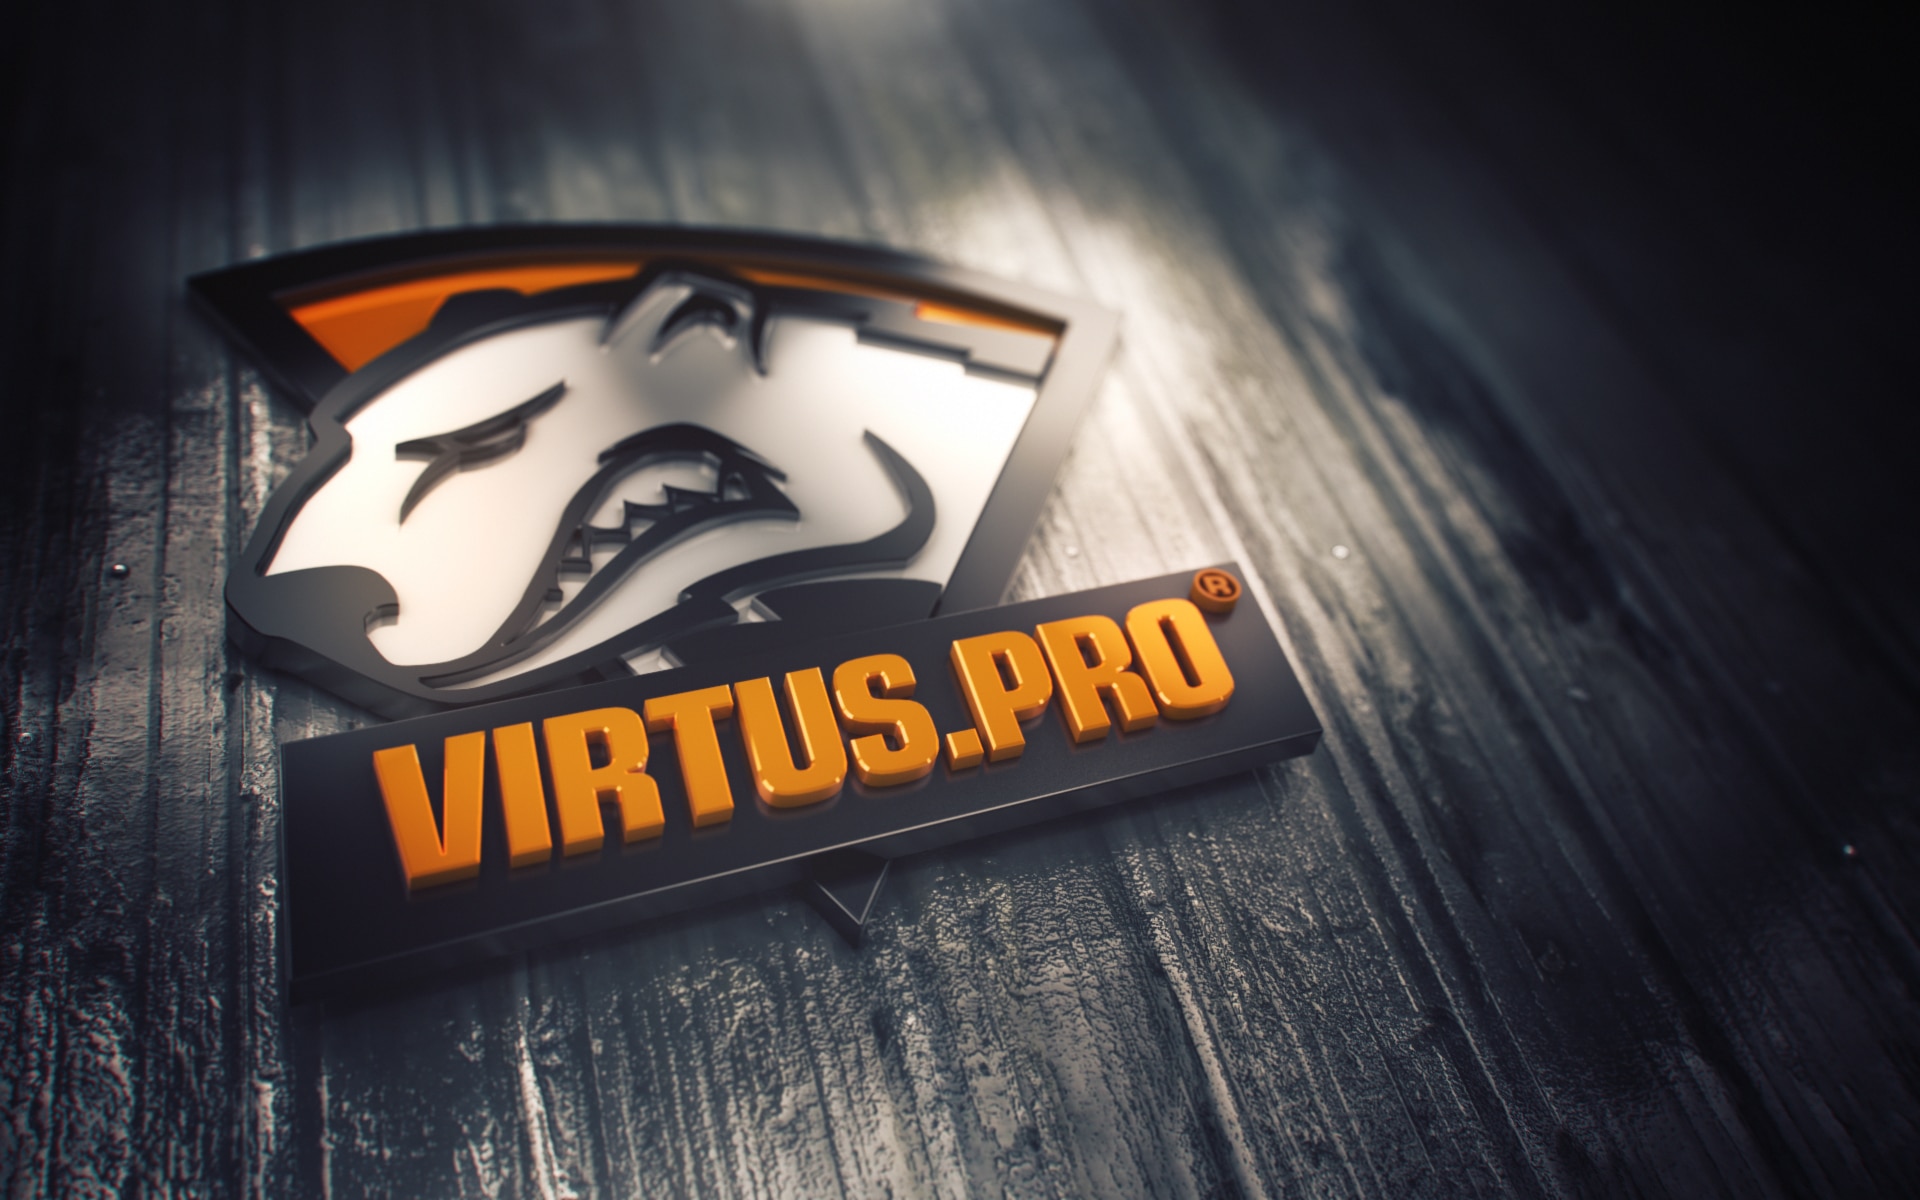 Виртус про кс го. КС го Virtus Pro. VP Virtus Pro. Киберспортивная команда Виртус про. Virtus Pro Dota 2 лого.